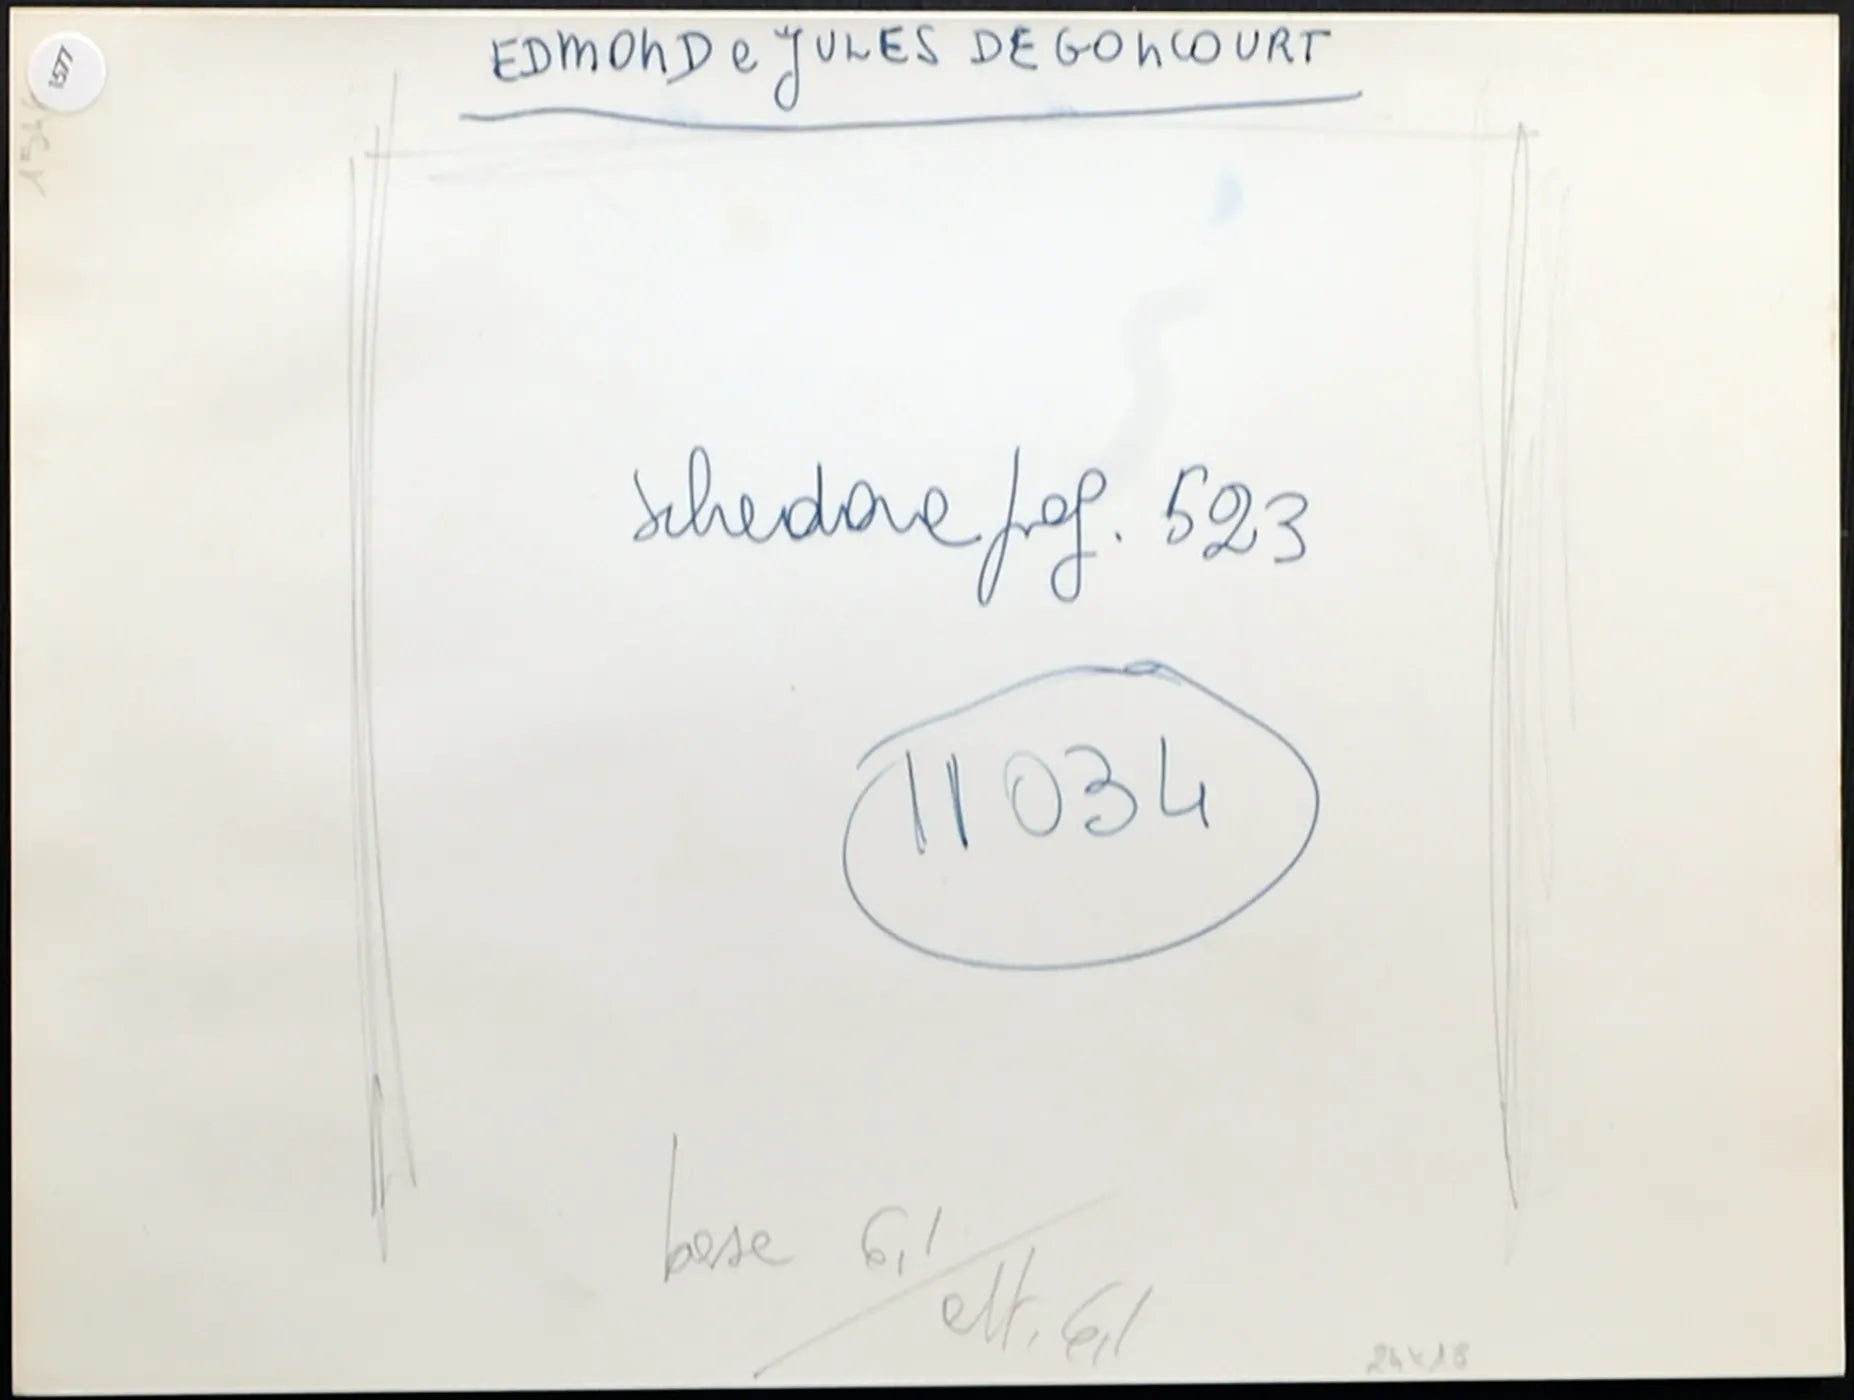 Edmond e Jules de Goncourt Ft 1577 - Stampa 24x18 cm - Farabola Stampa ai sali d'argento